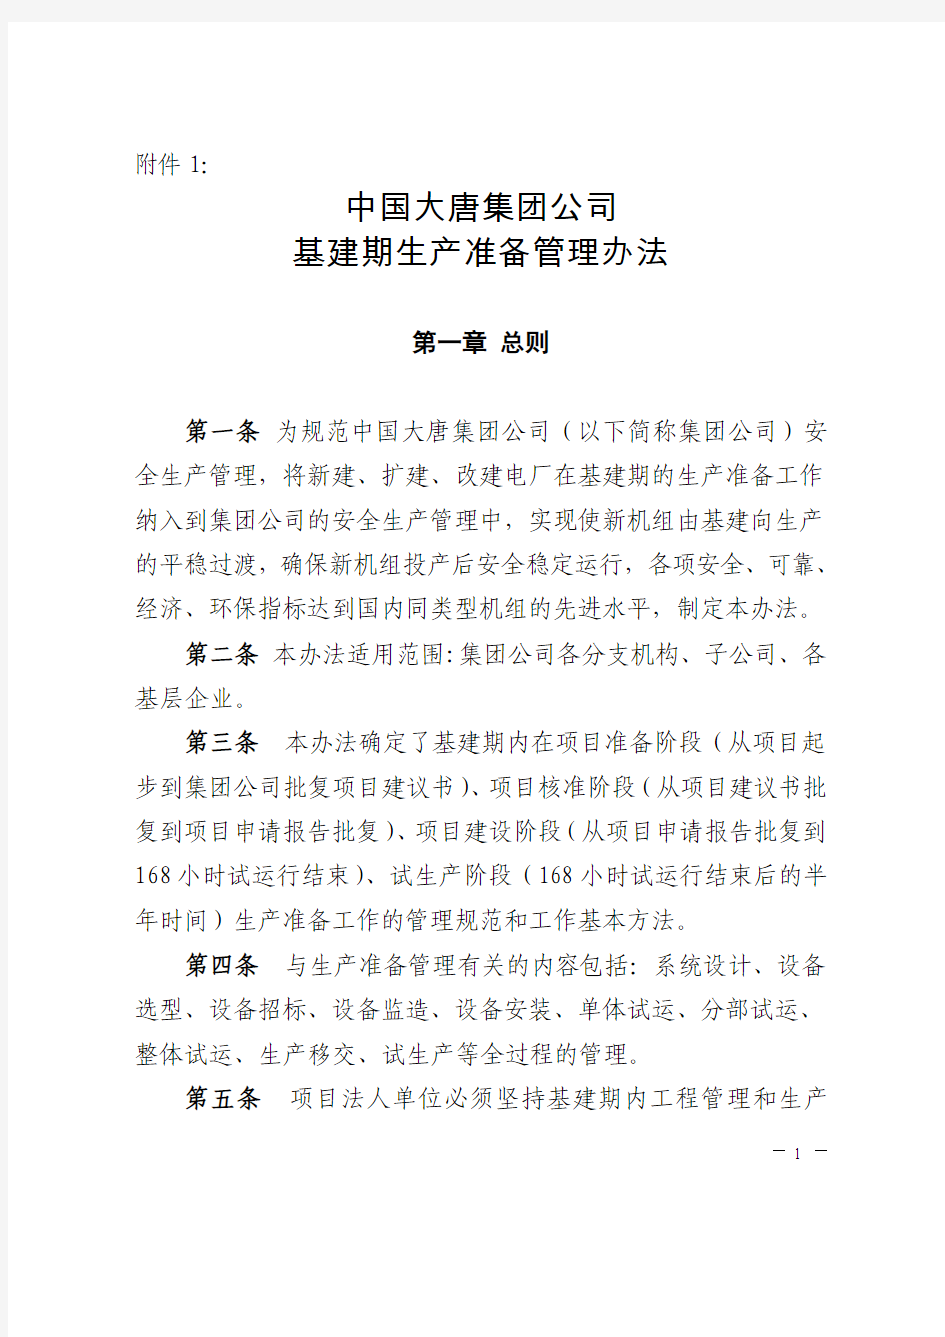 中国大唐集团公司基建期生产准备管理办法(hb)